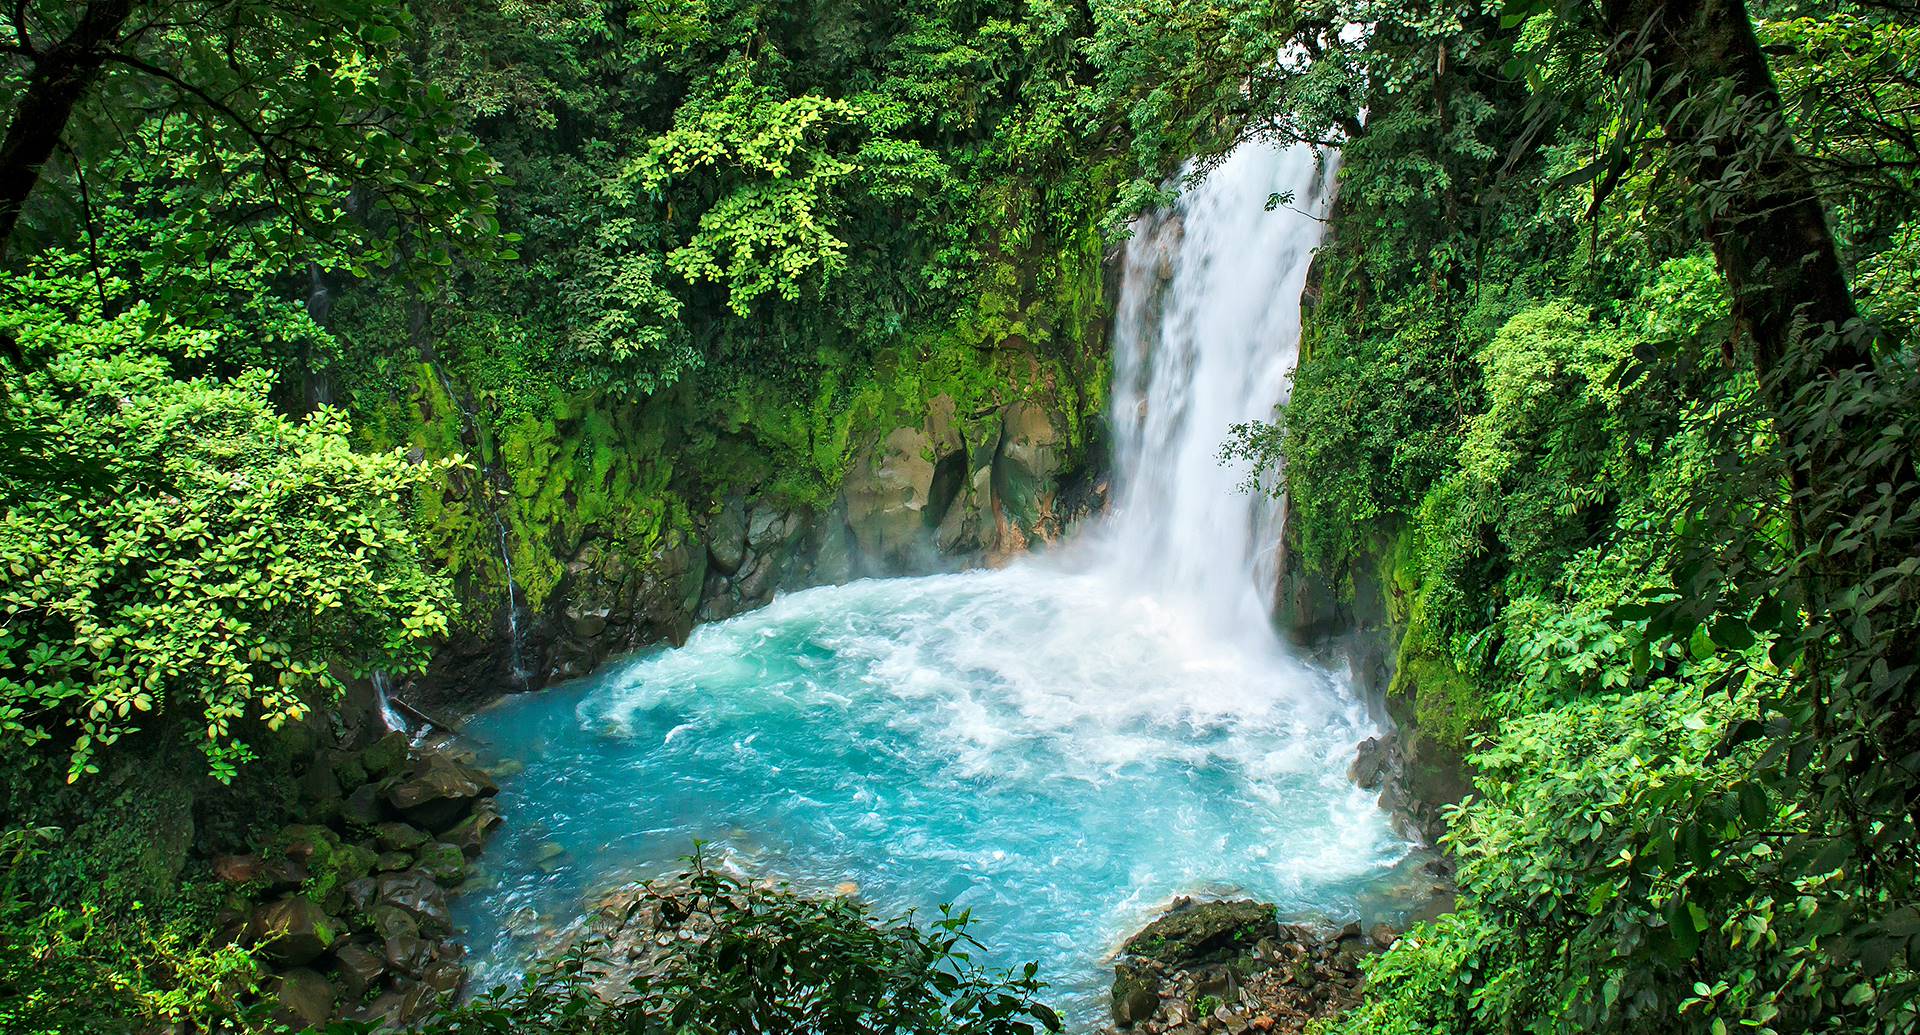 Parchi Naturali in Costa Rica